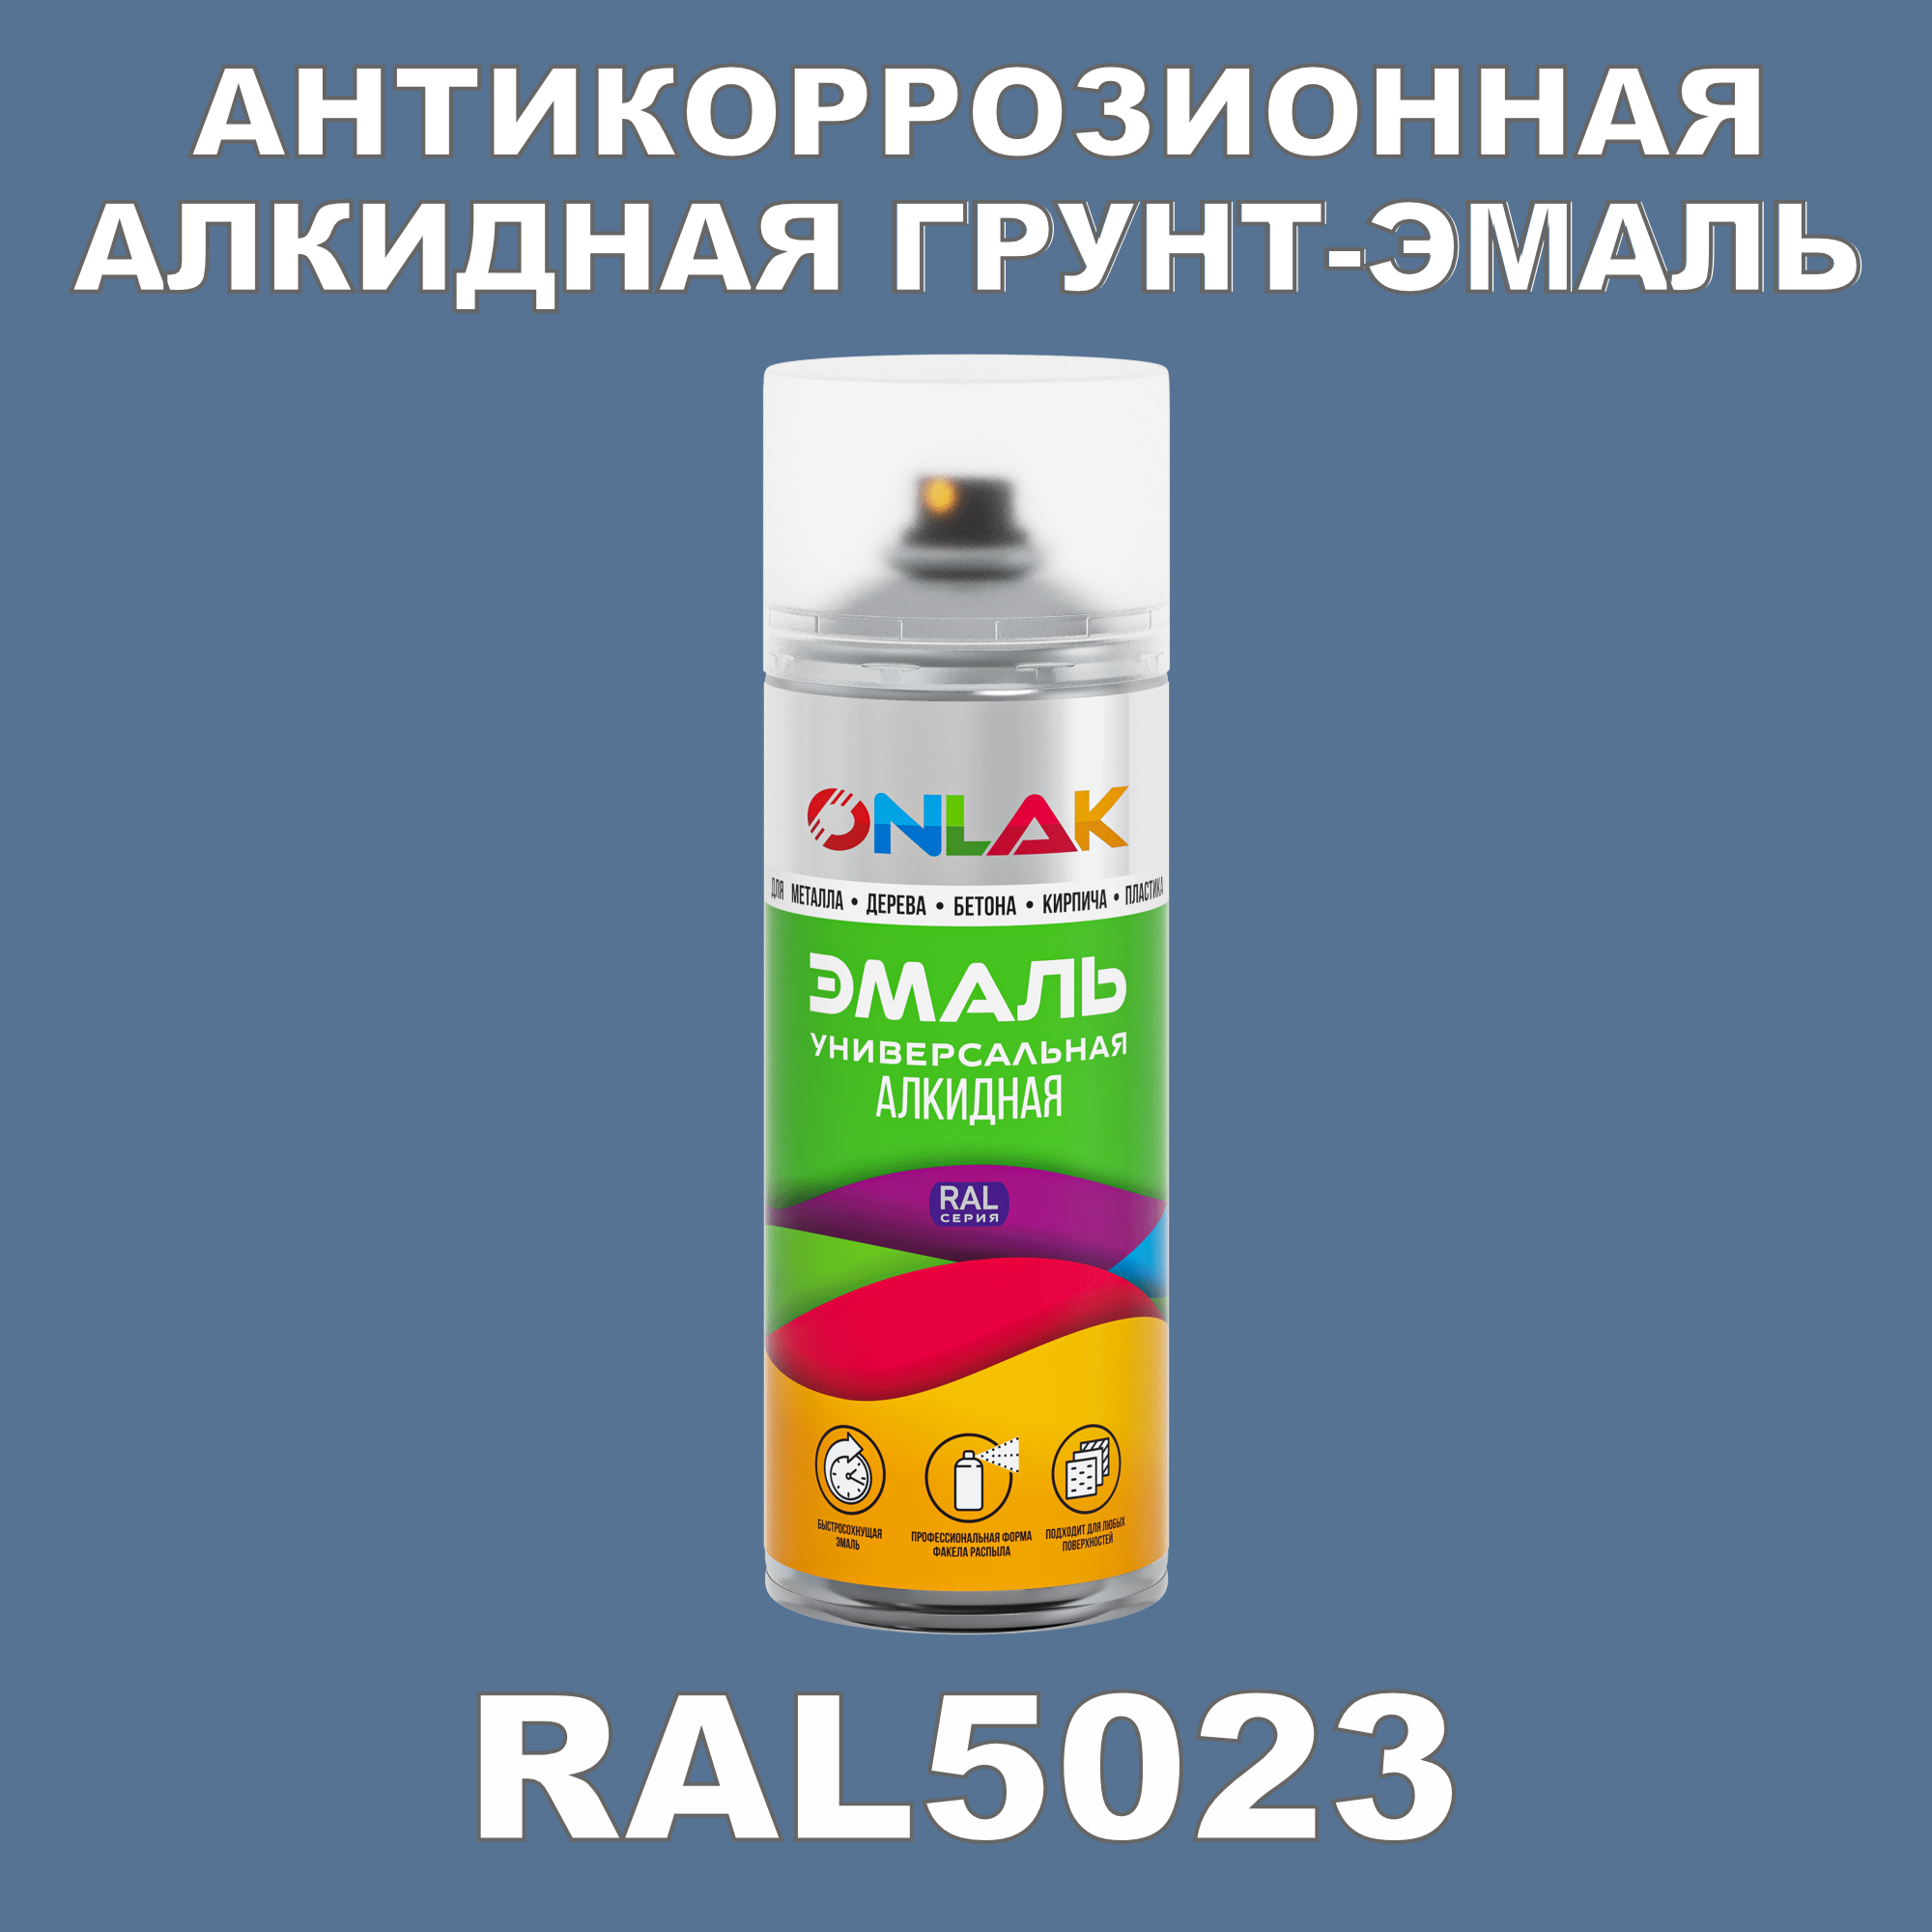 Антикоррозионная грунт-эмаль ONLAK RAL5023 матовая для металла и защиты от ржавчины